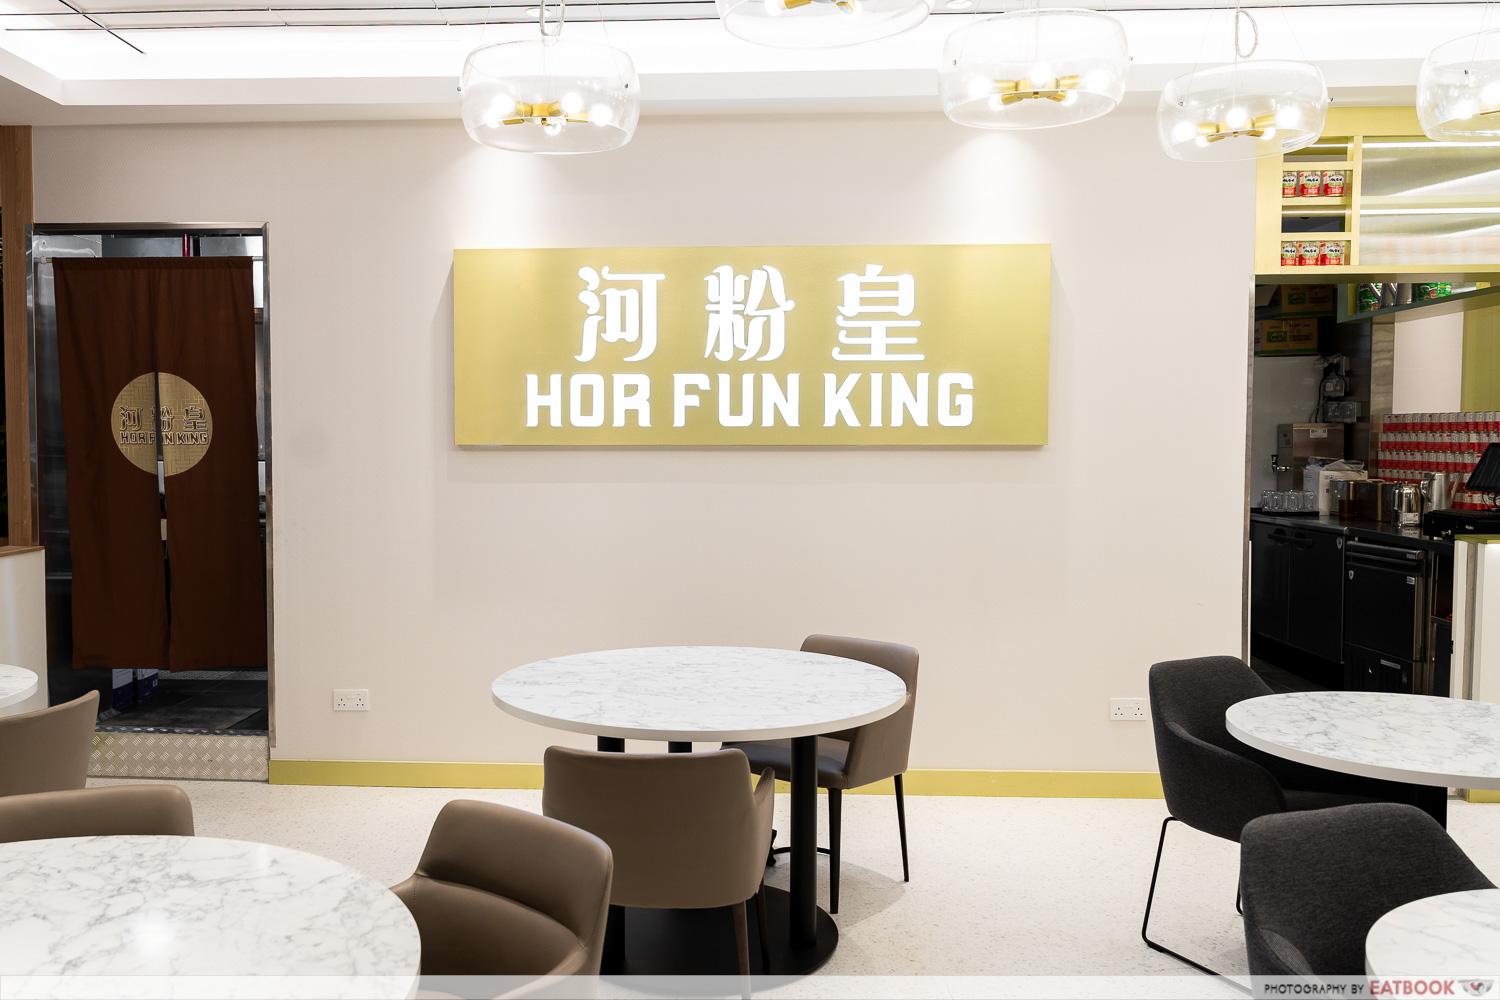 hor-fun-king-storefront